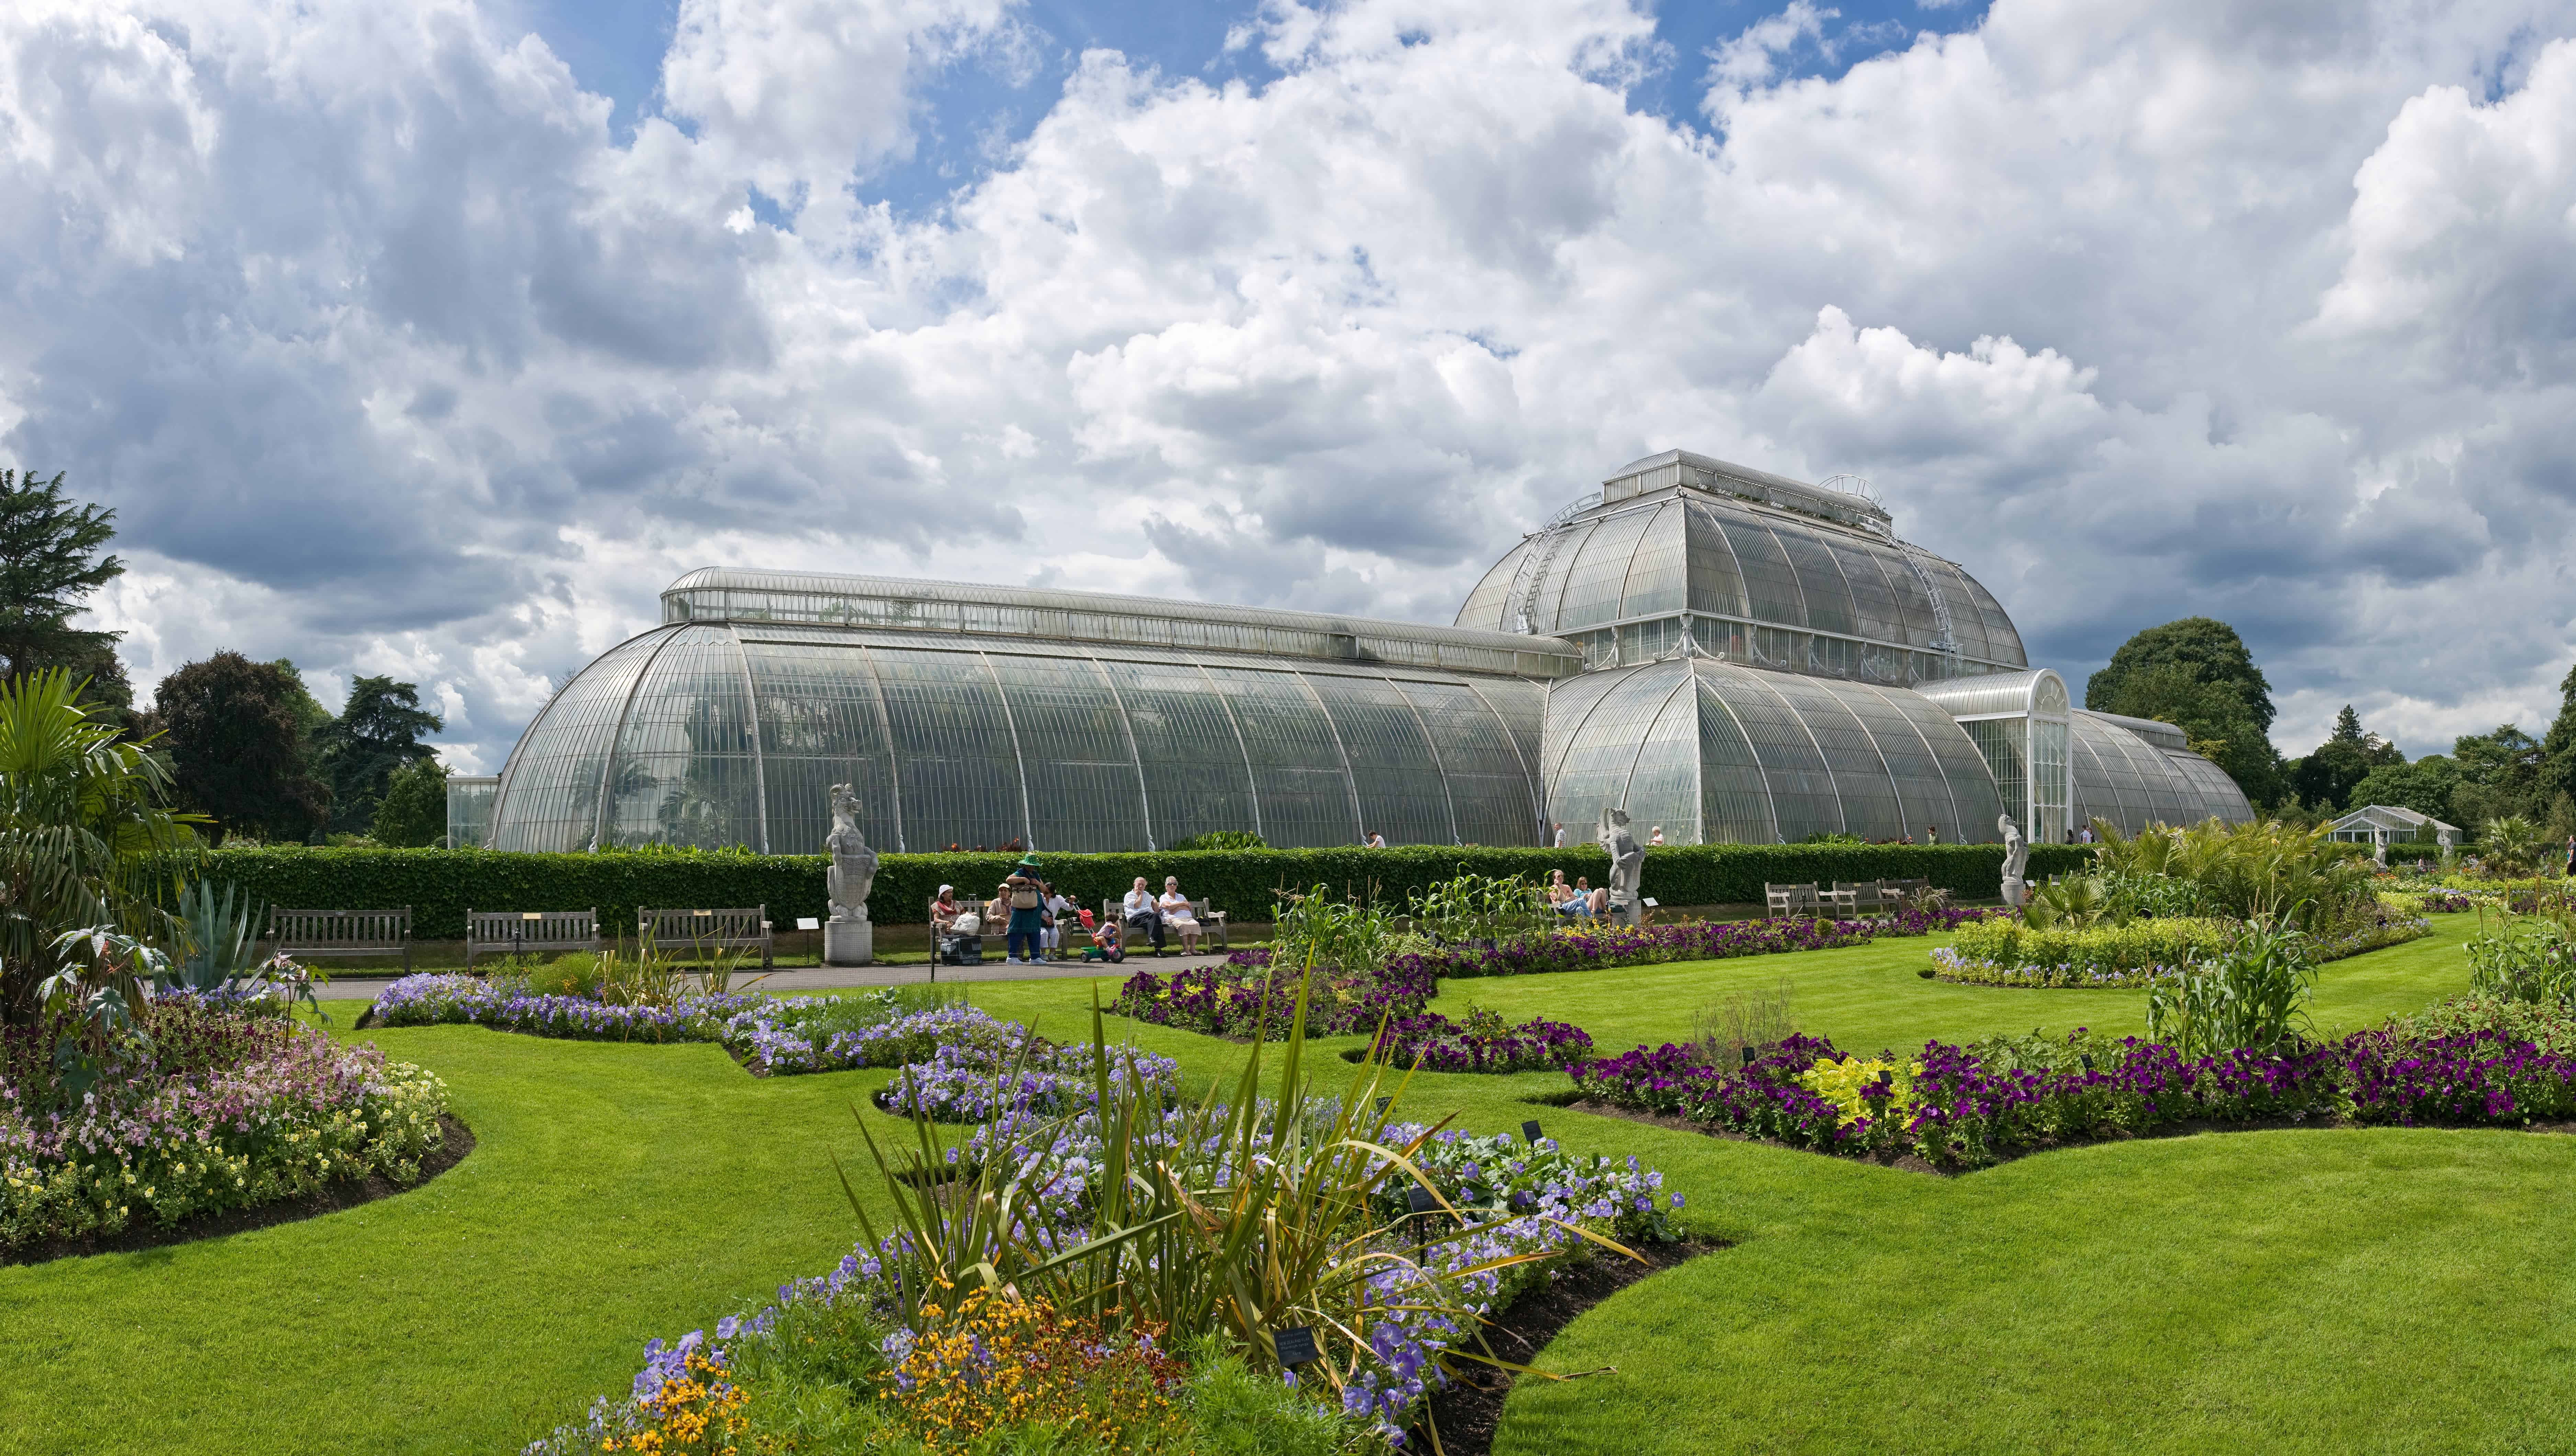 Royal Botanic Gardens, Kew, London, established 1759, is one of the world's most important botanical gardens. Image credits: David Iliff.